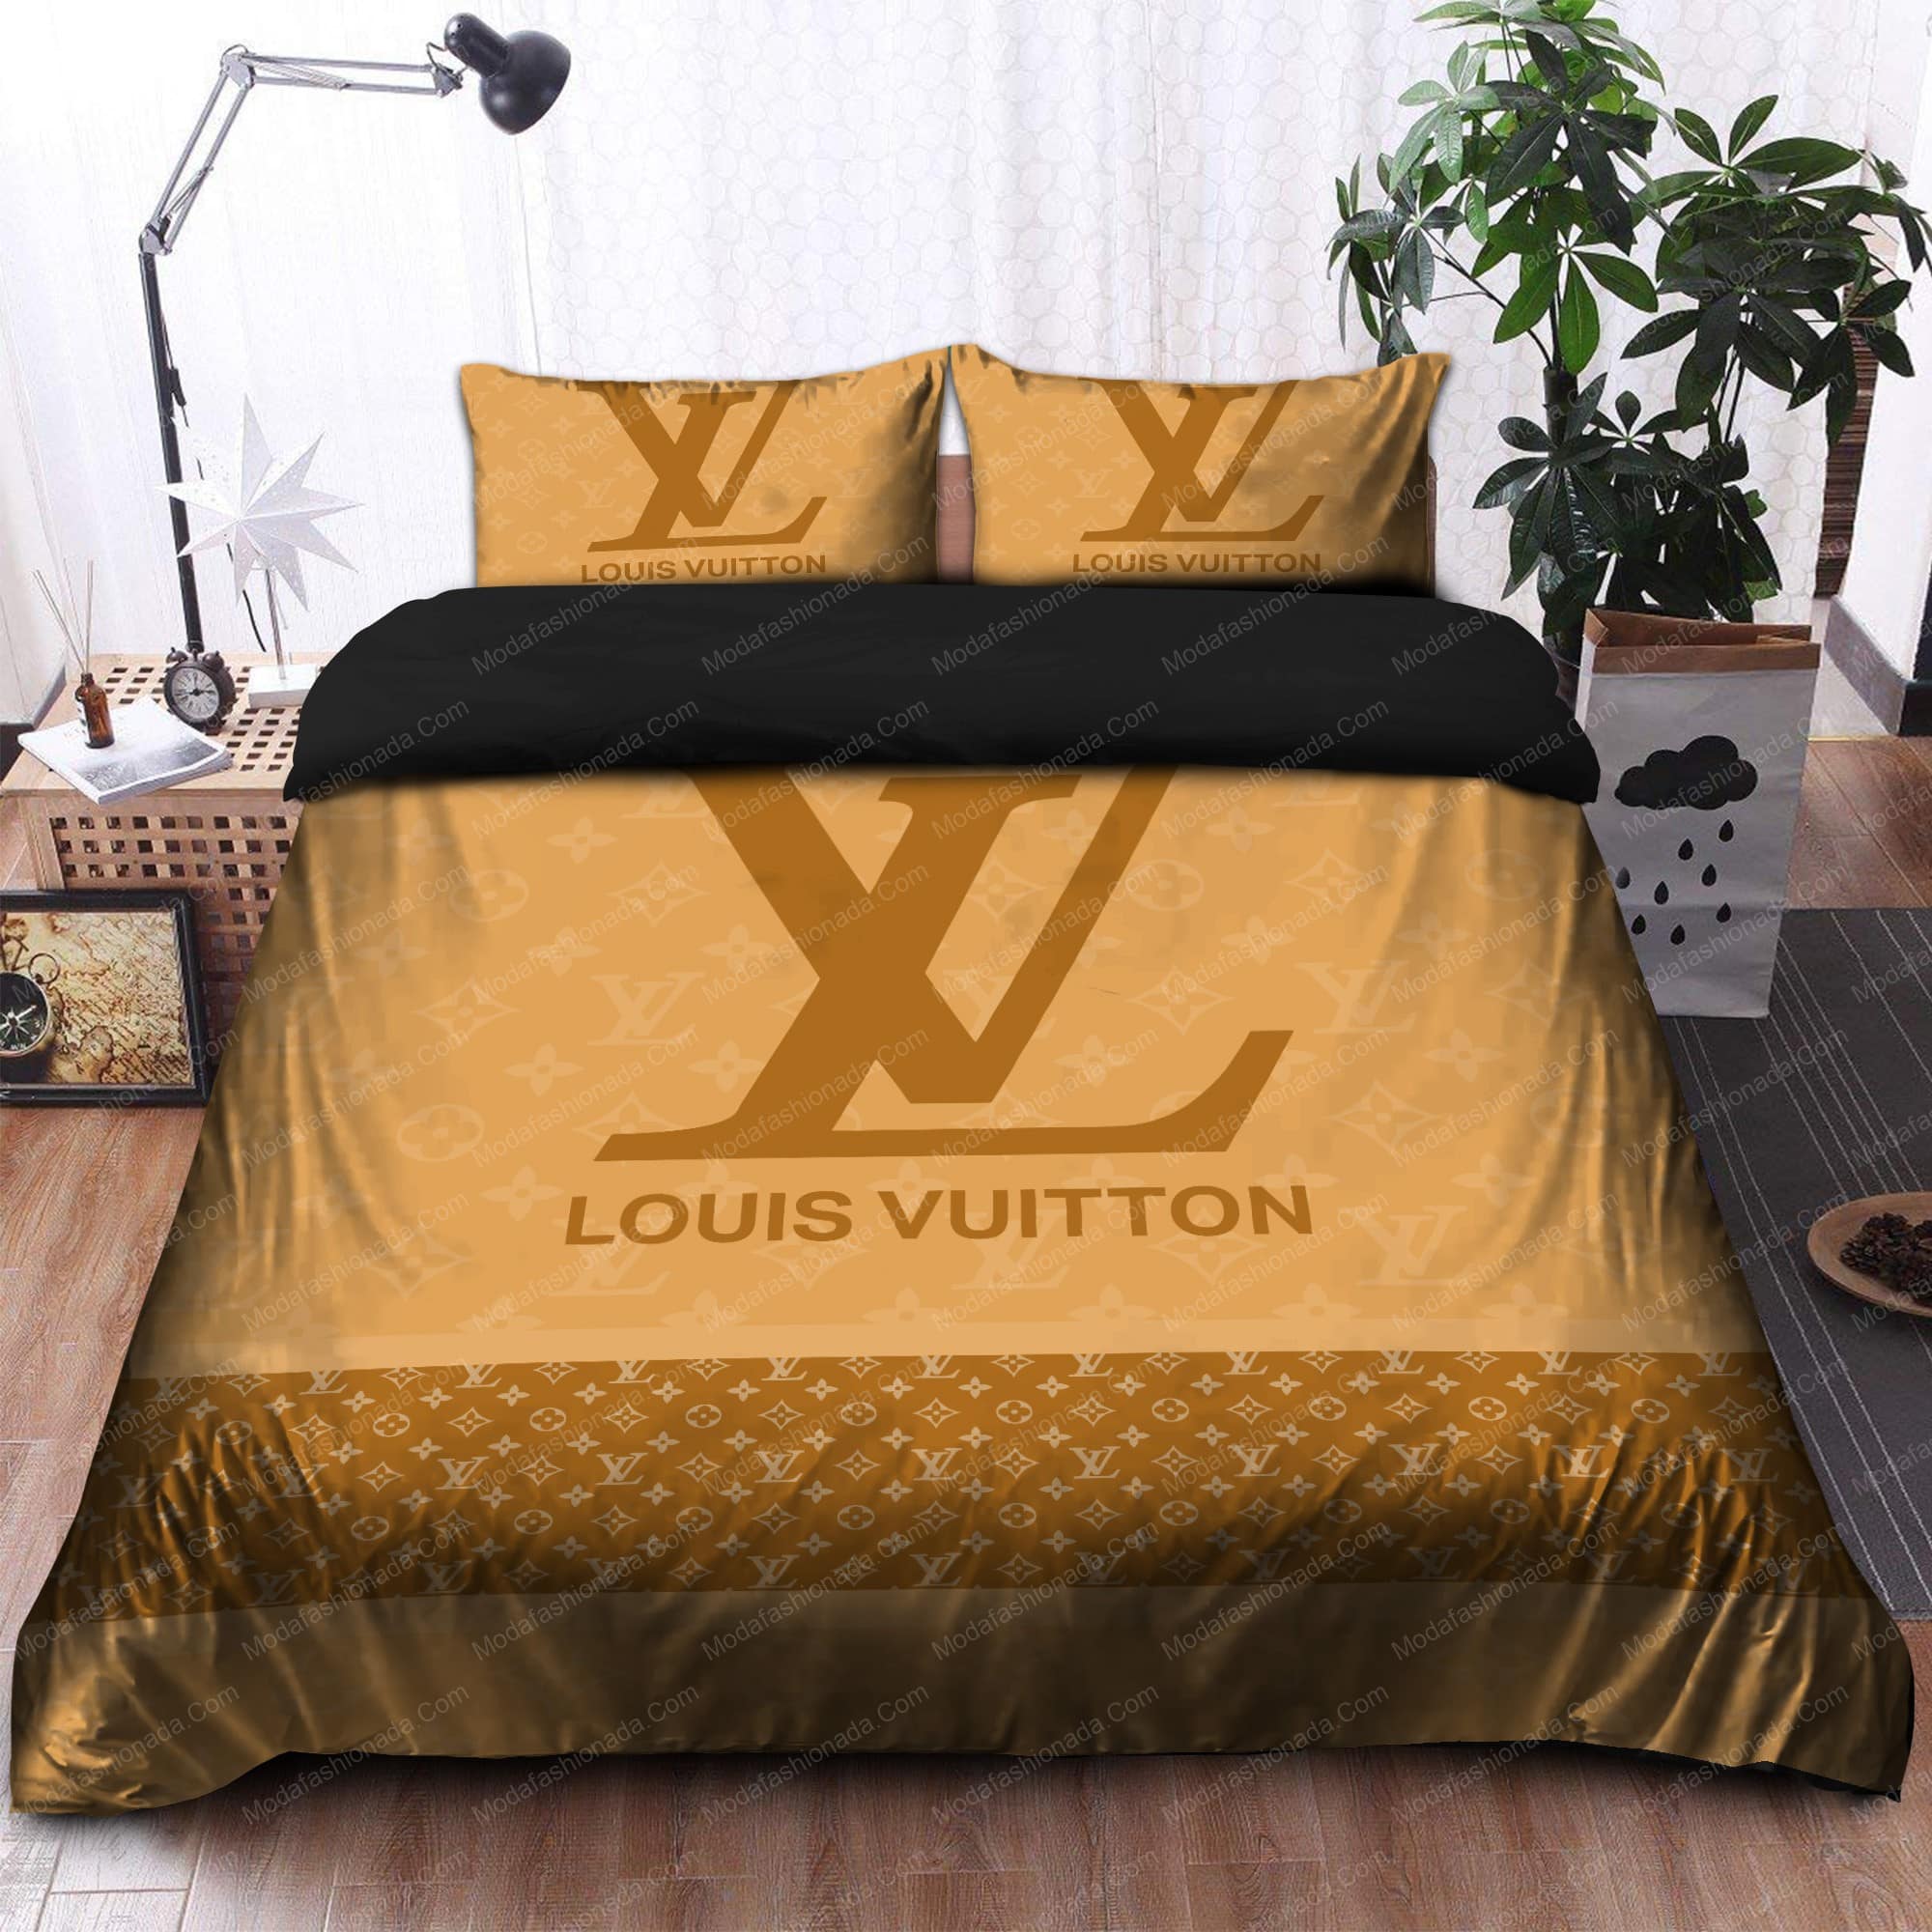 Louis Vuitton Luxury Bedding Sets - Jomagift